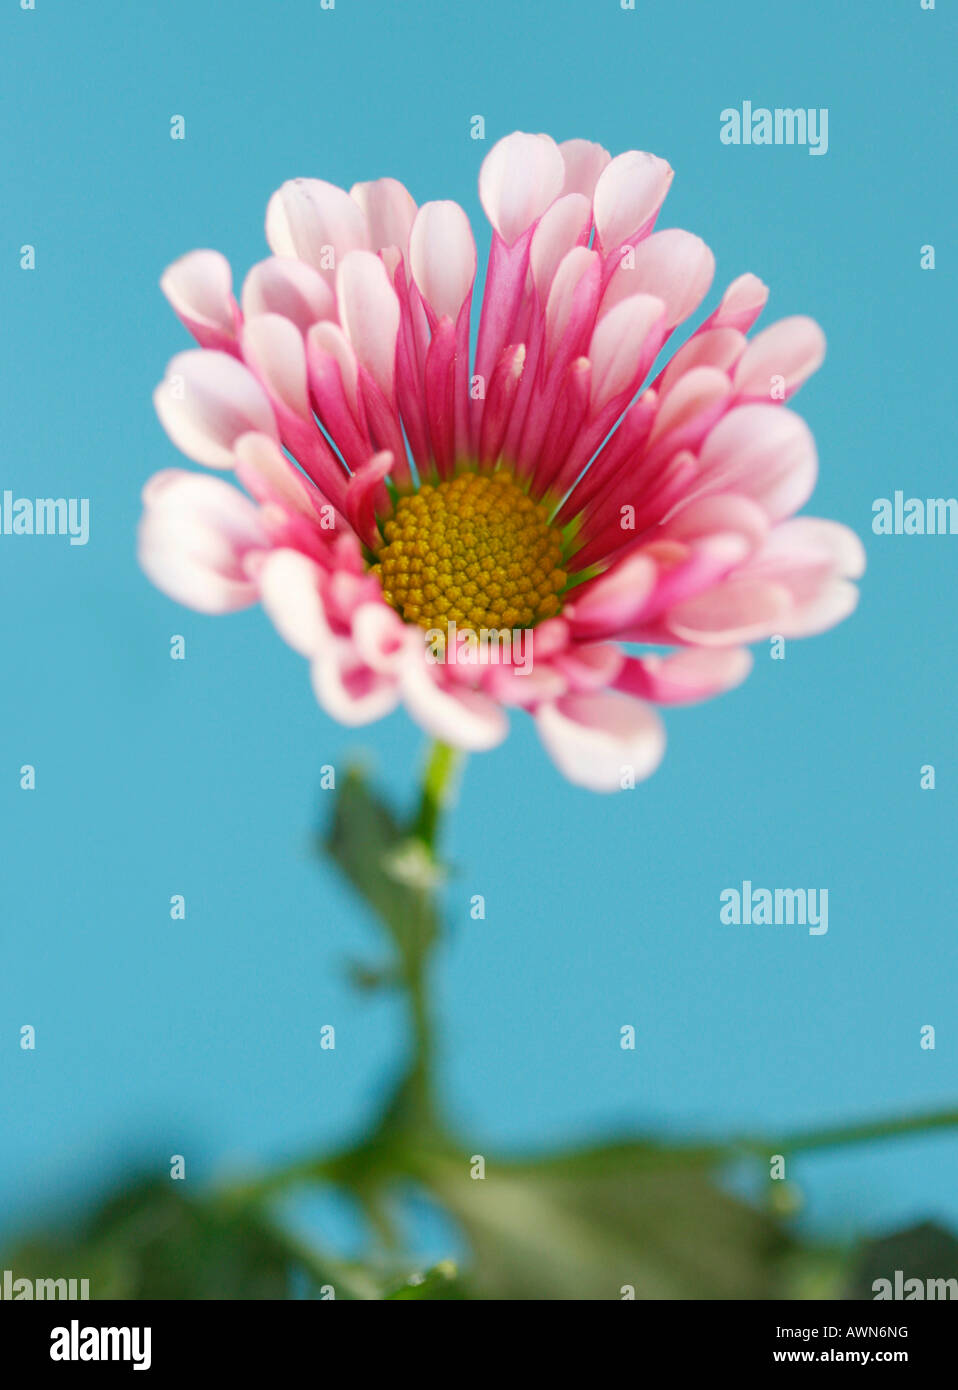 Maman ou chrysanthème (Asteraceae) Banque D'Images